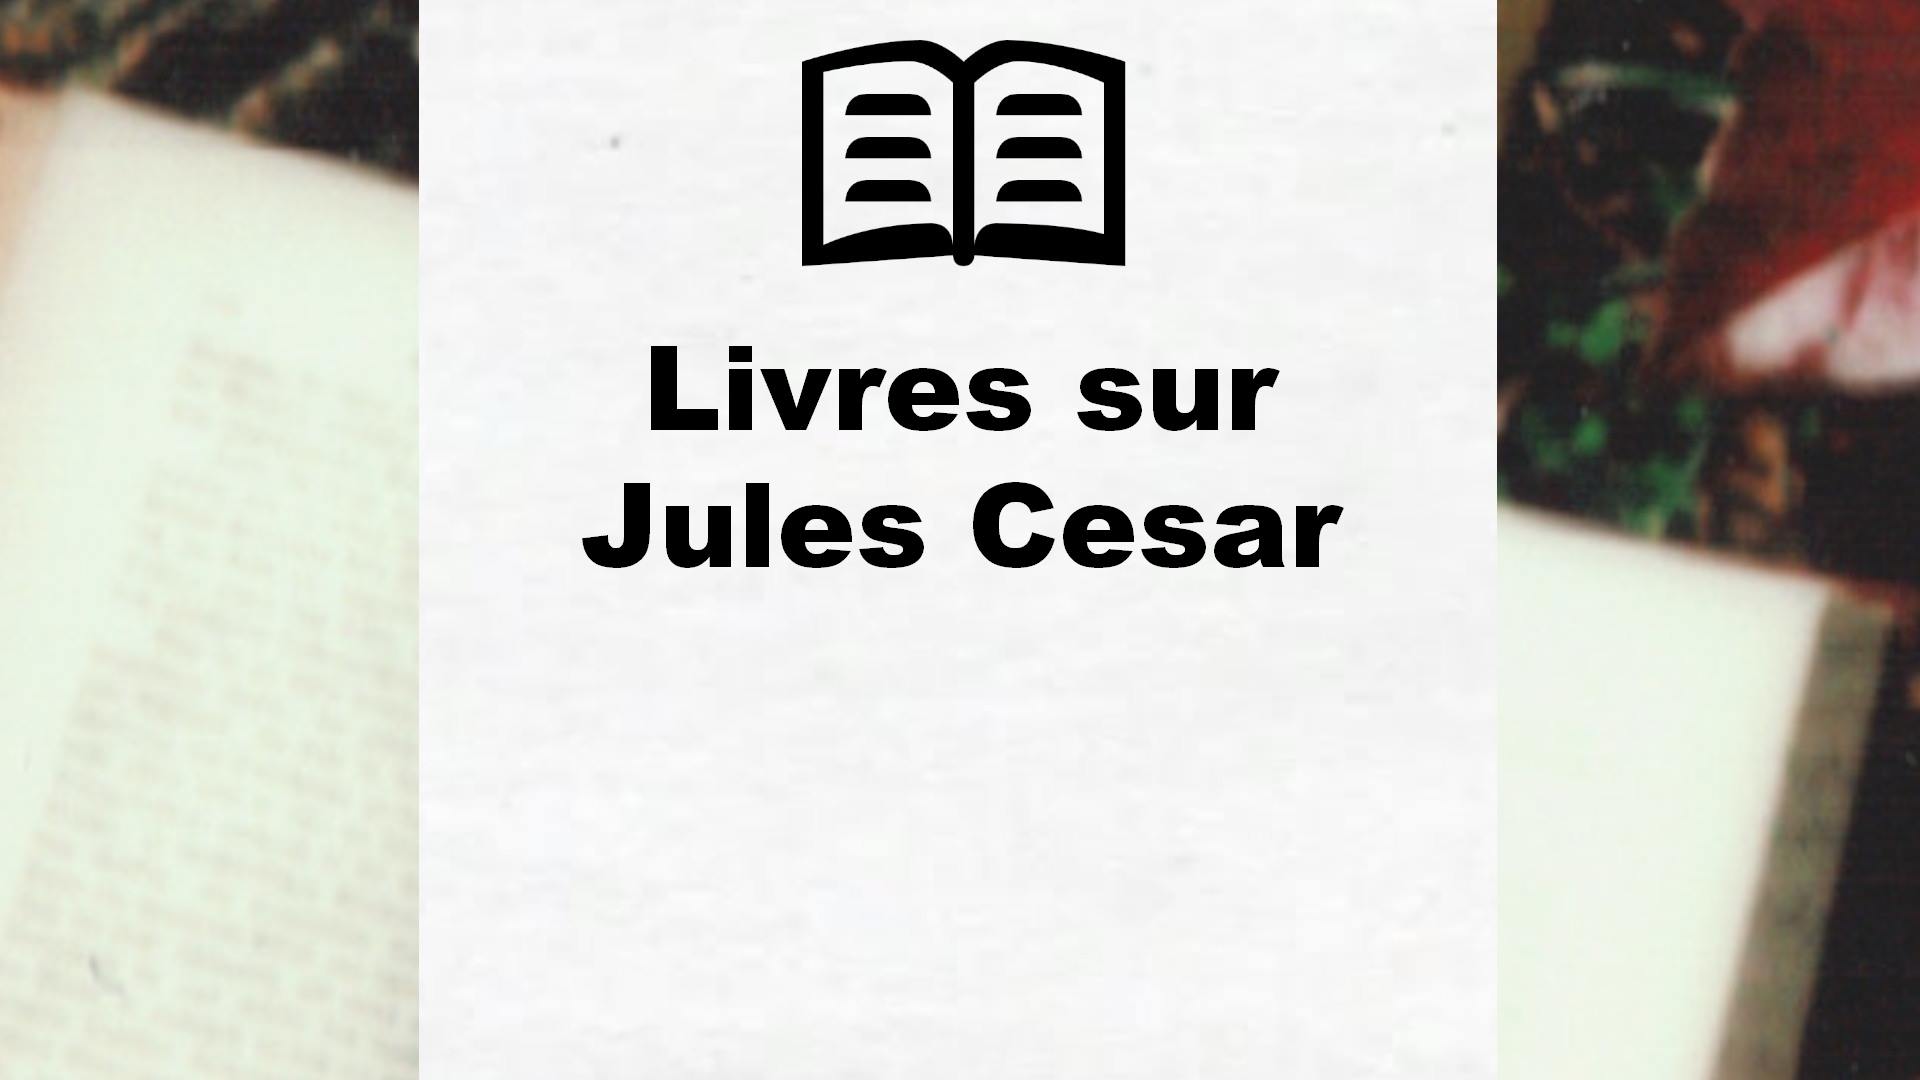 Livres sur Jules Cesar